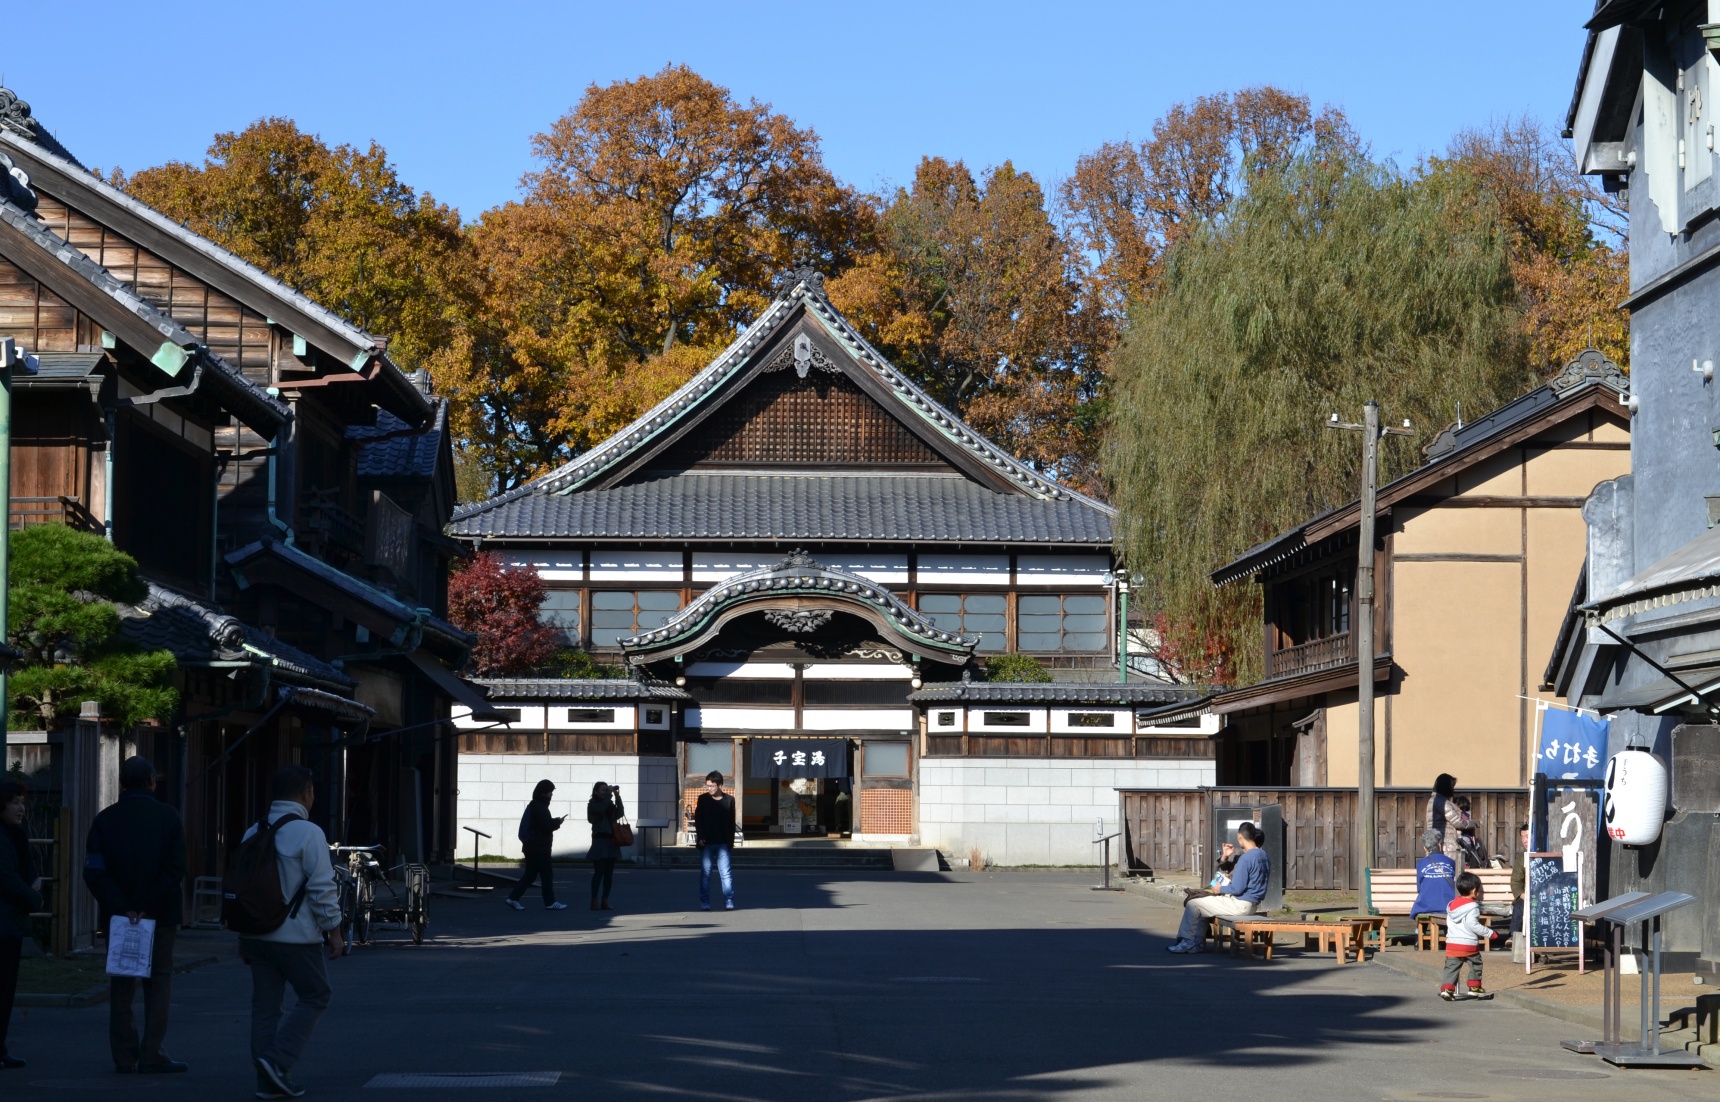 도쿄의 옛 건물을 찾아서 '에도도쿄타테모노엔'